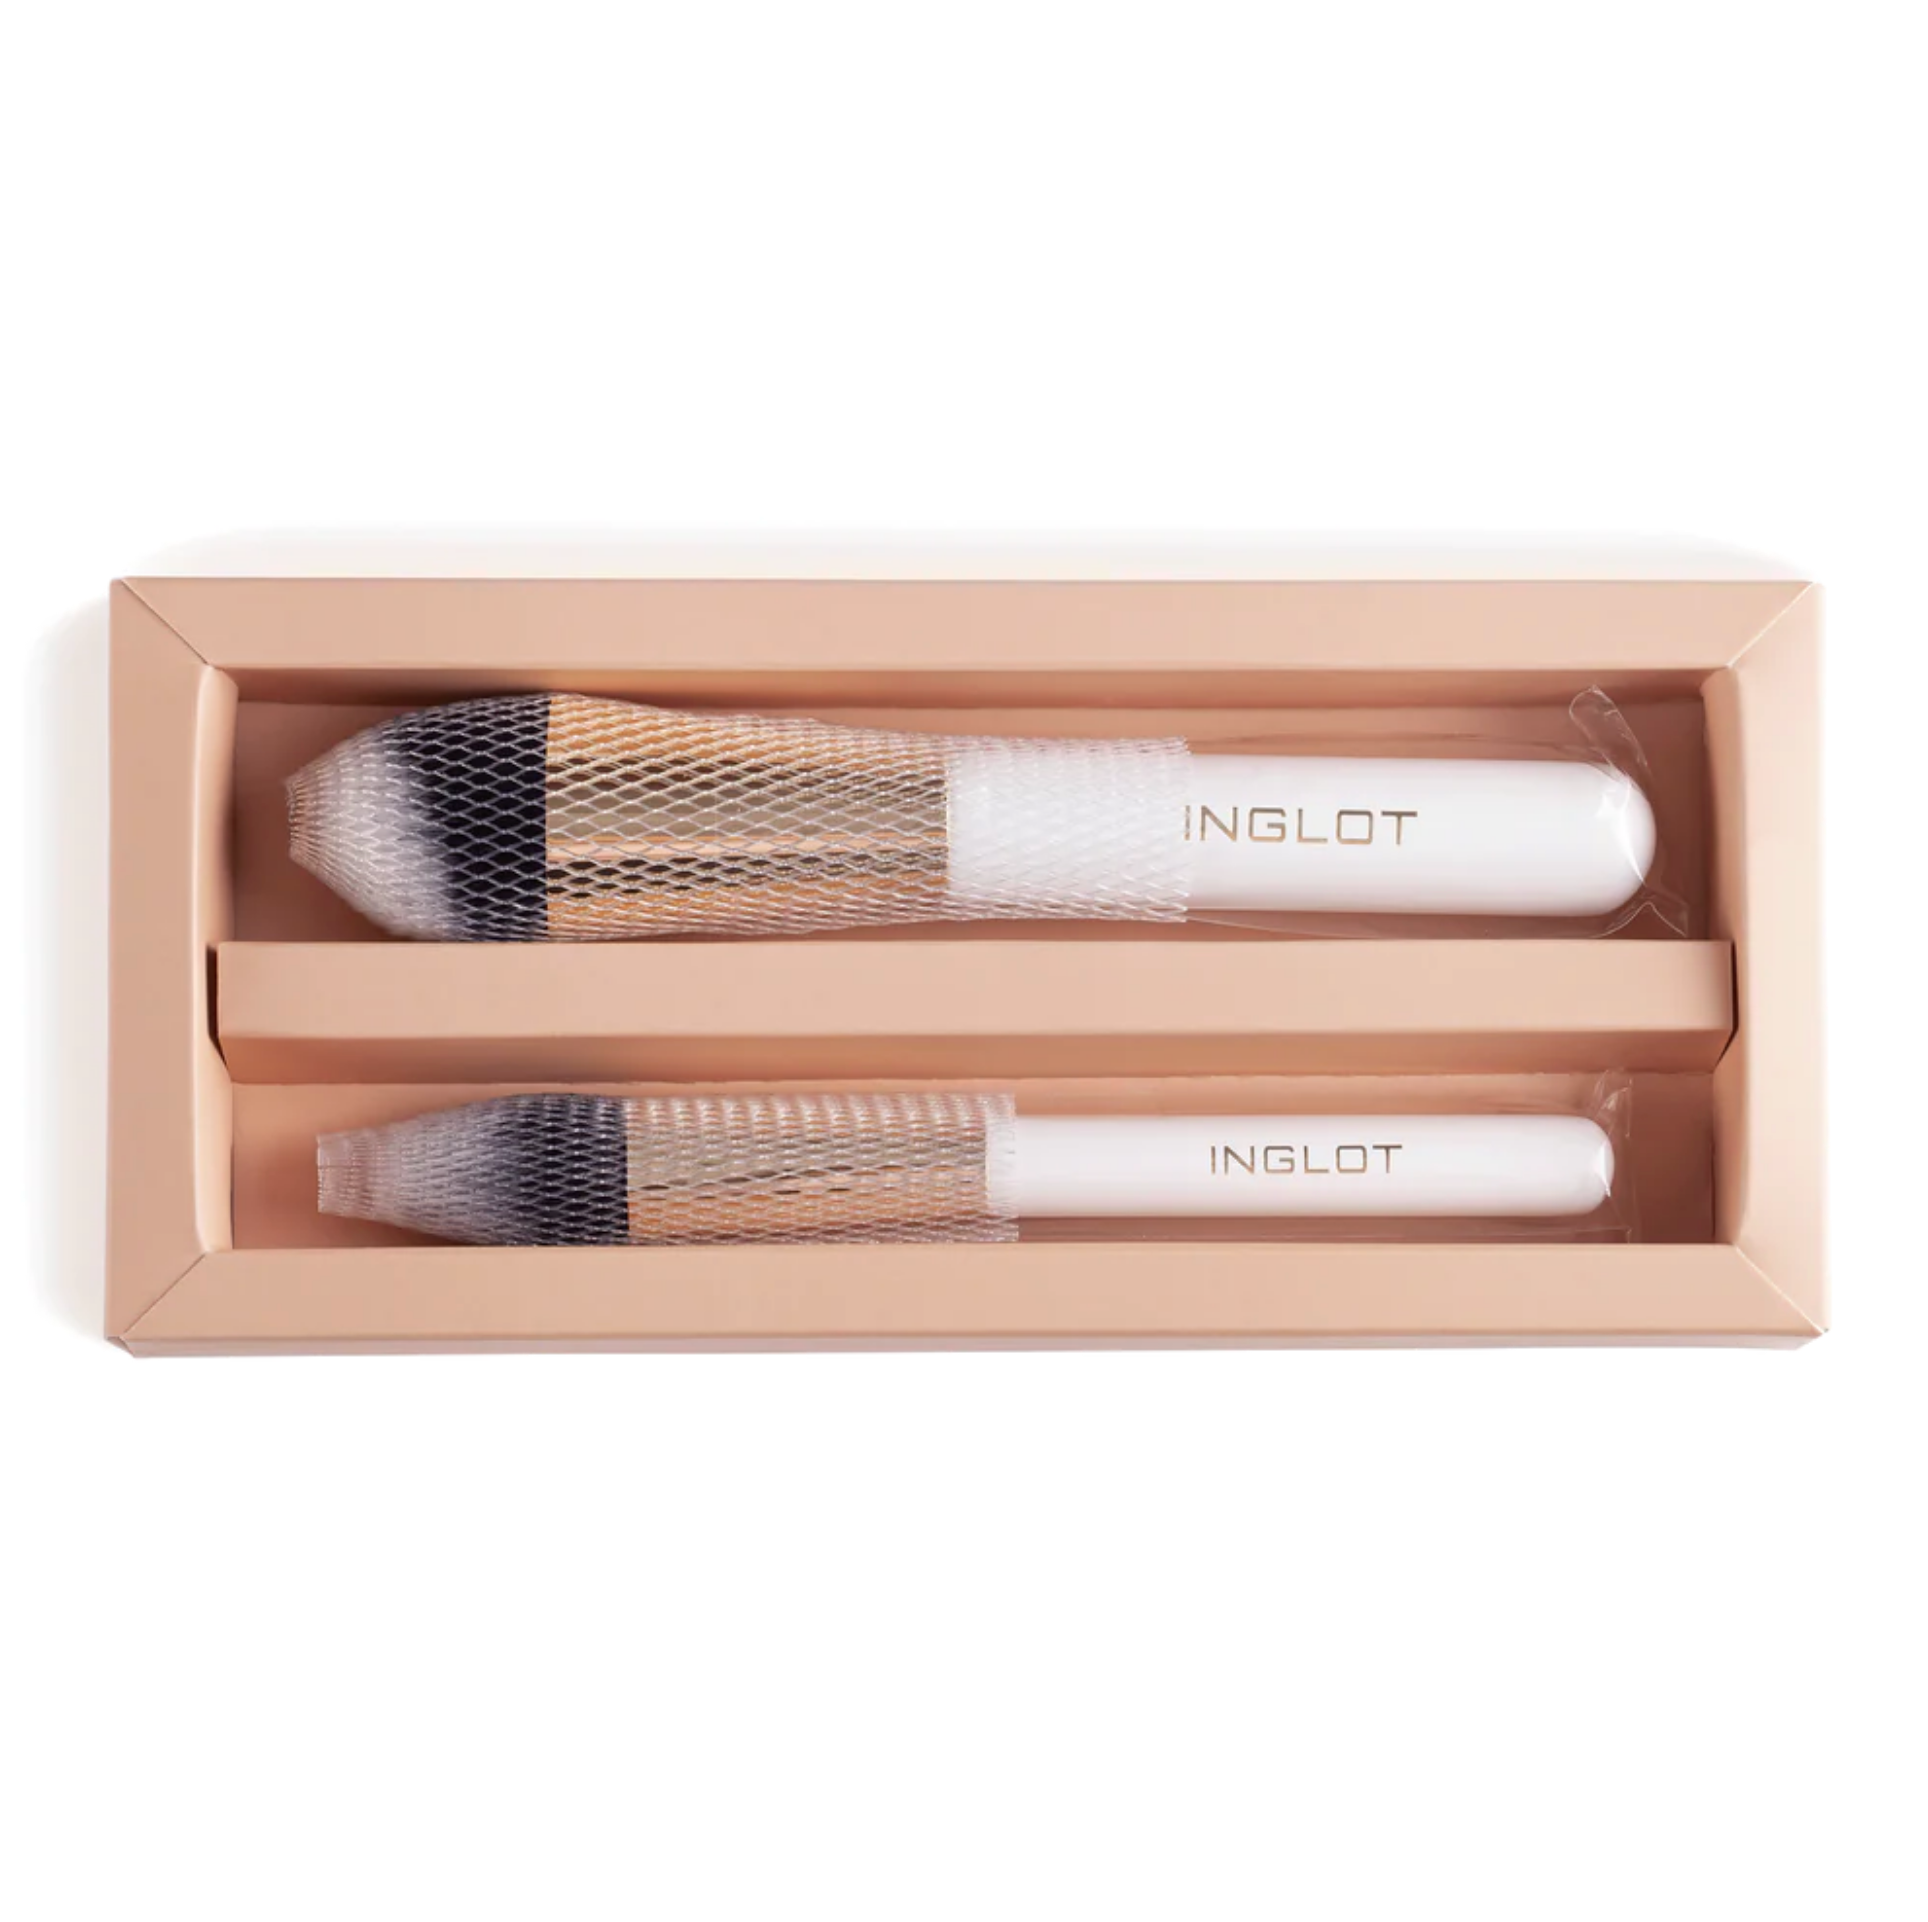 Inglot Premium Face Duo Brush Set, open packaging